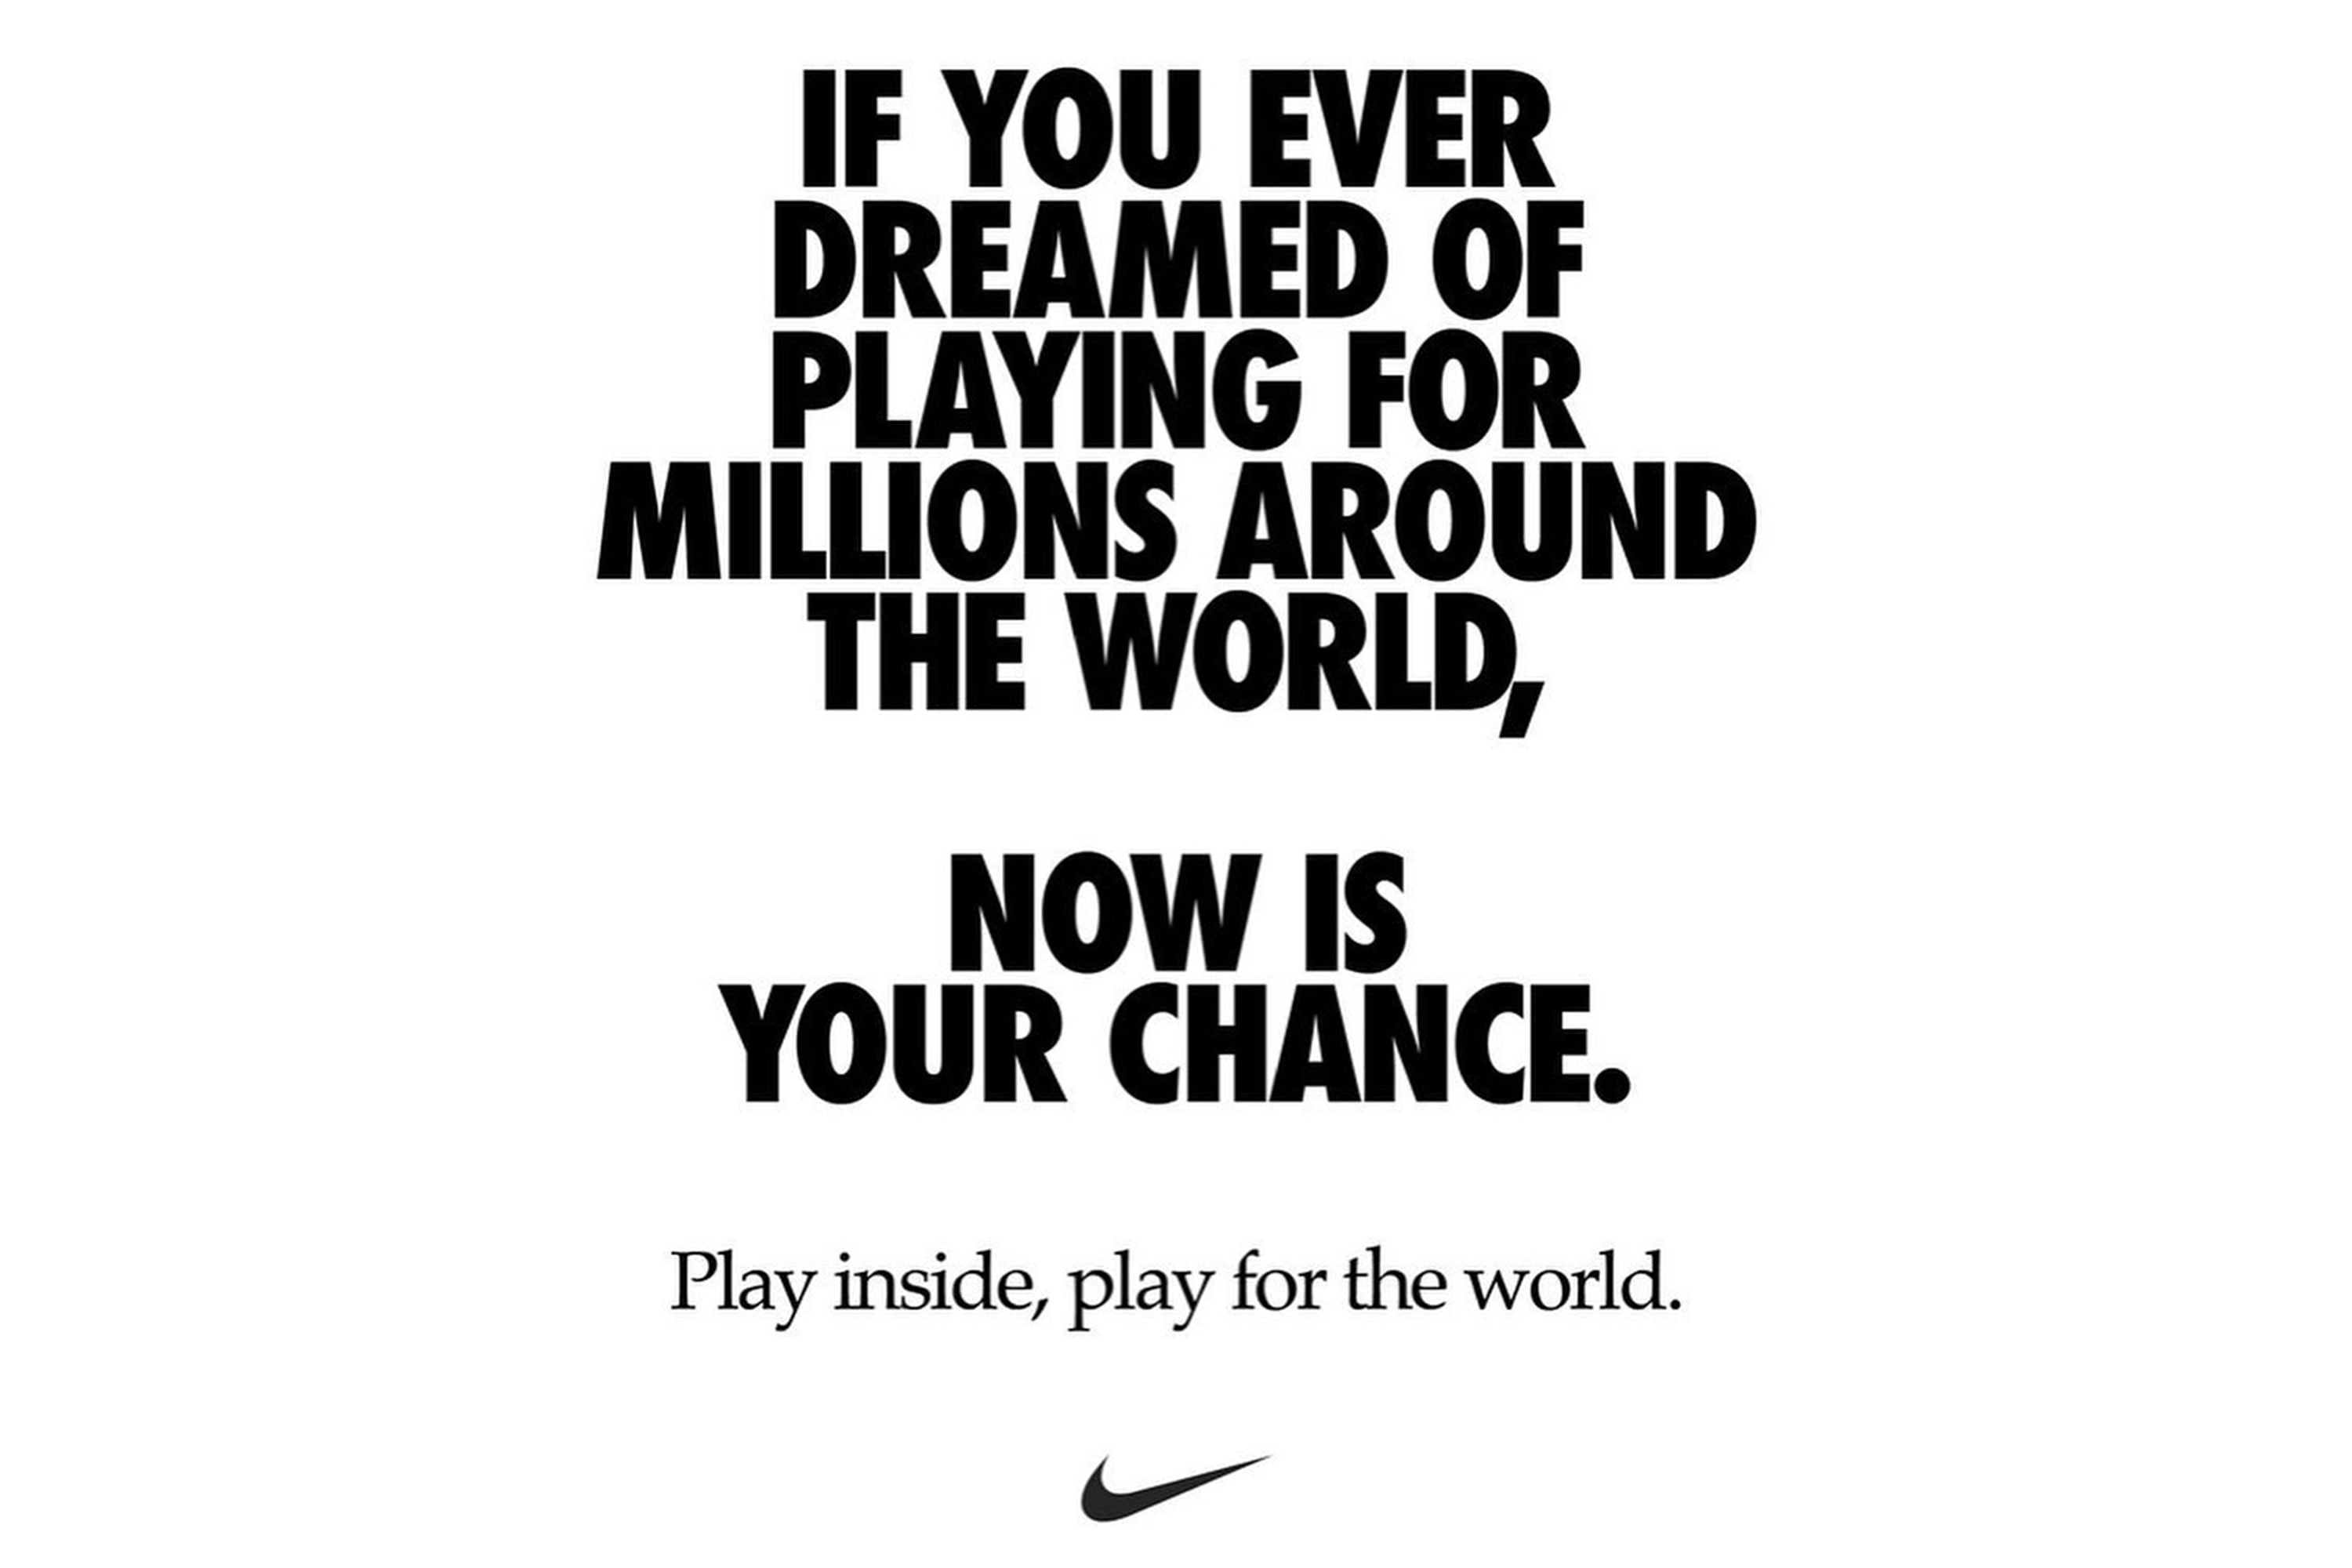 Nike 發佈 #playfortheworld 廣告，淺談運動品牌於世界事件中的作用